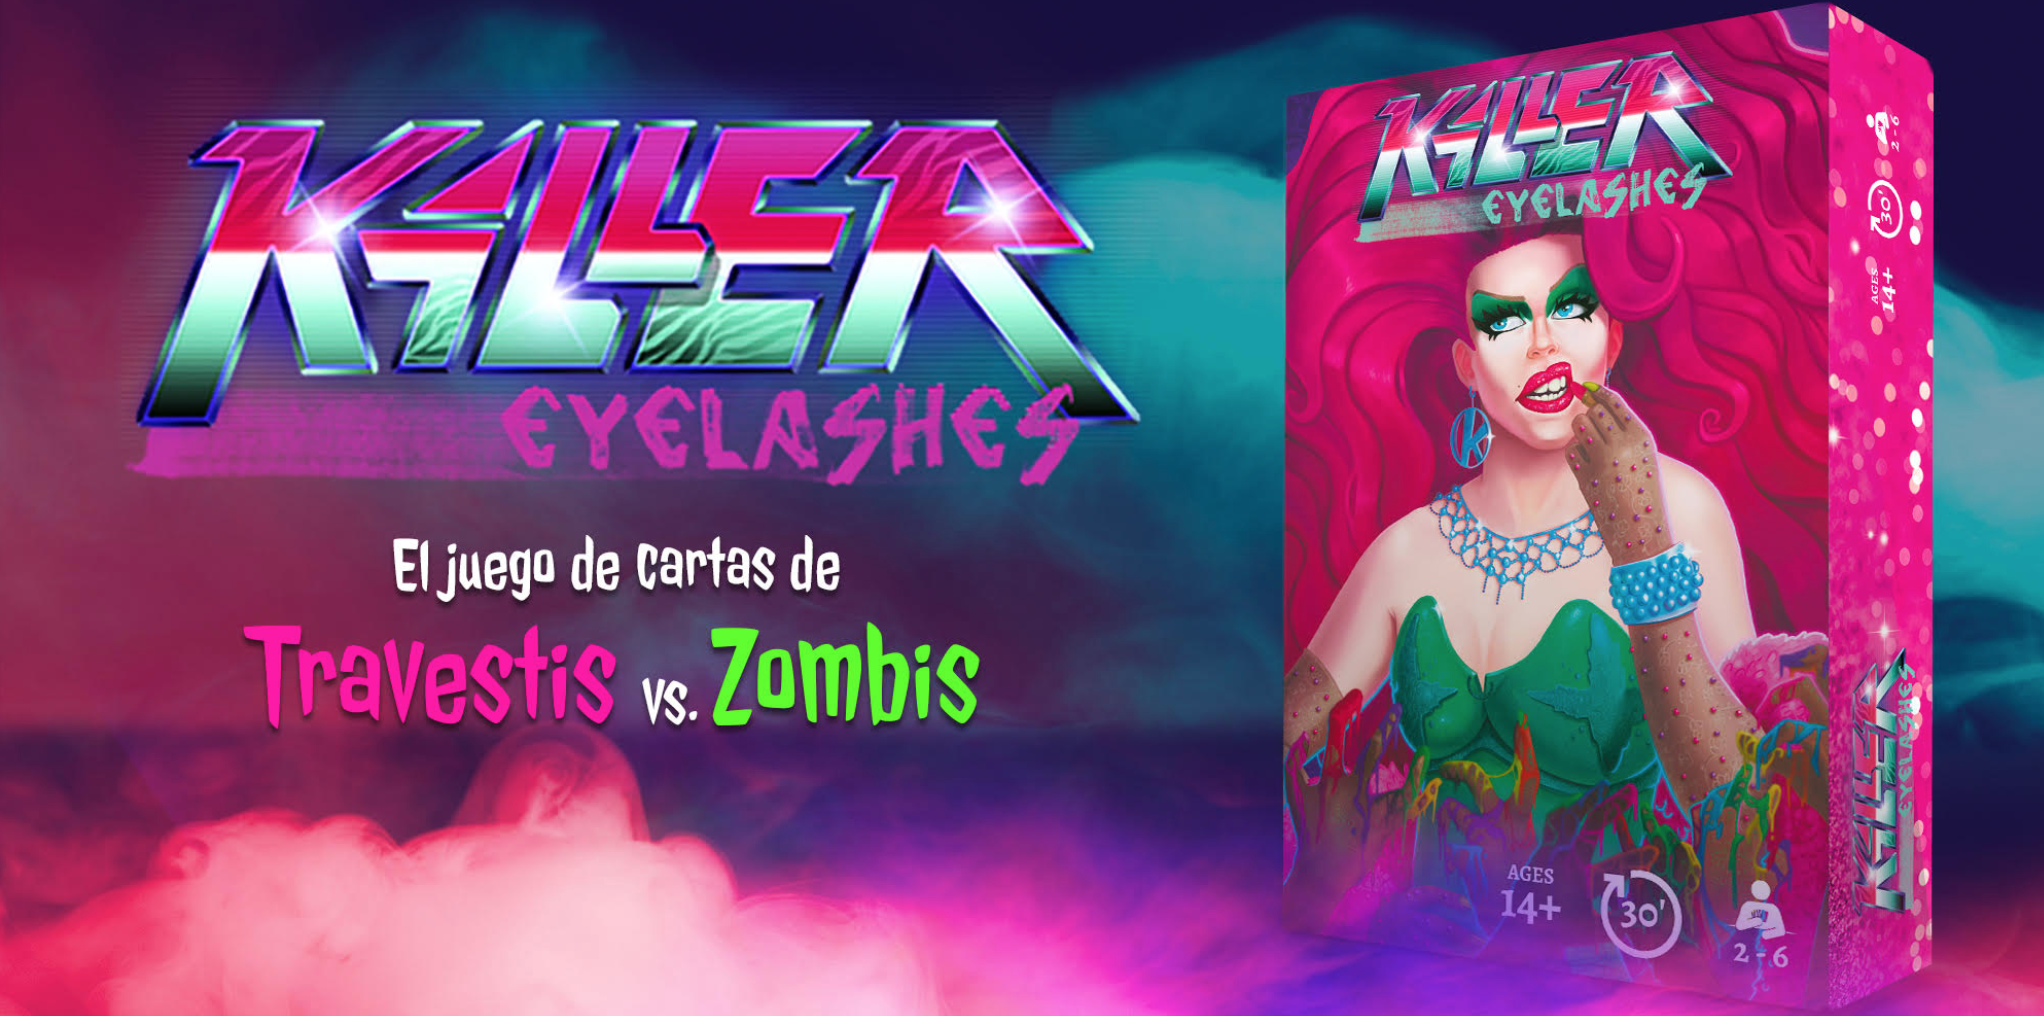 Llega ‘Killer Eyelashes’, el primer juego de mesa de travestis y zombis